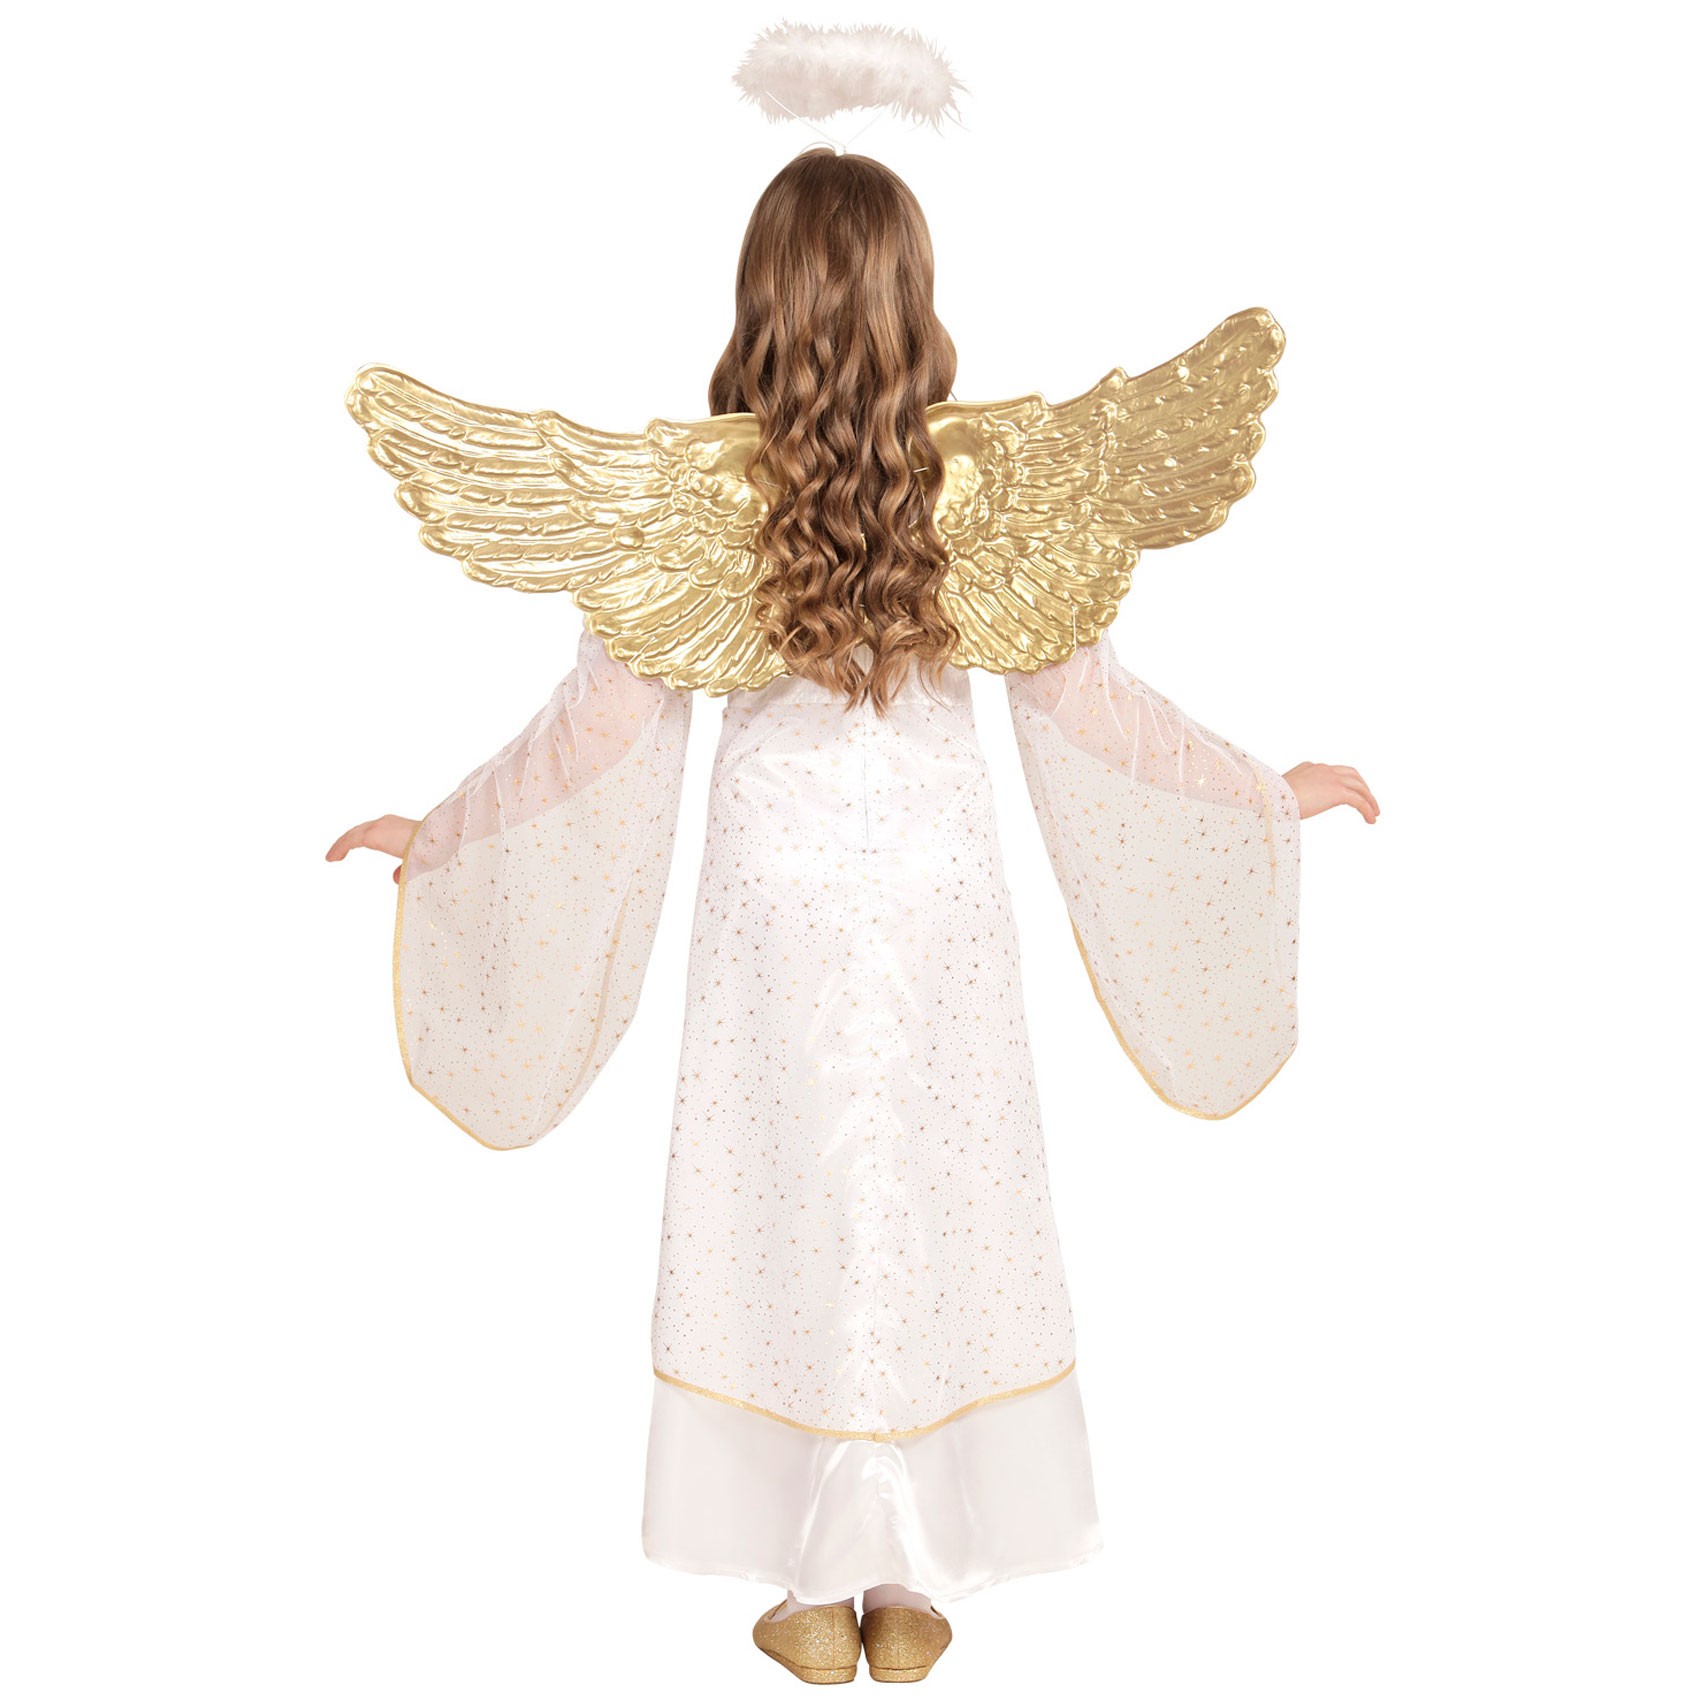 Engelskostüm Kinder 98 bis 140 087461 Engel Kostüm Mädchen mit Flügeln 